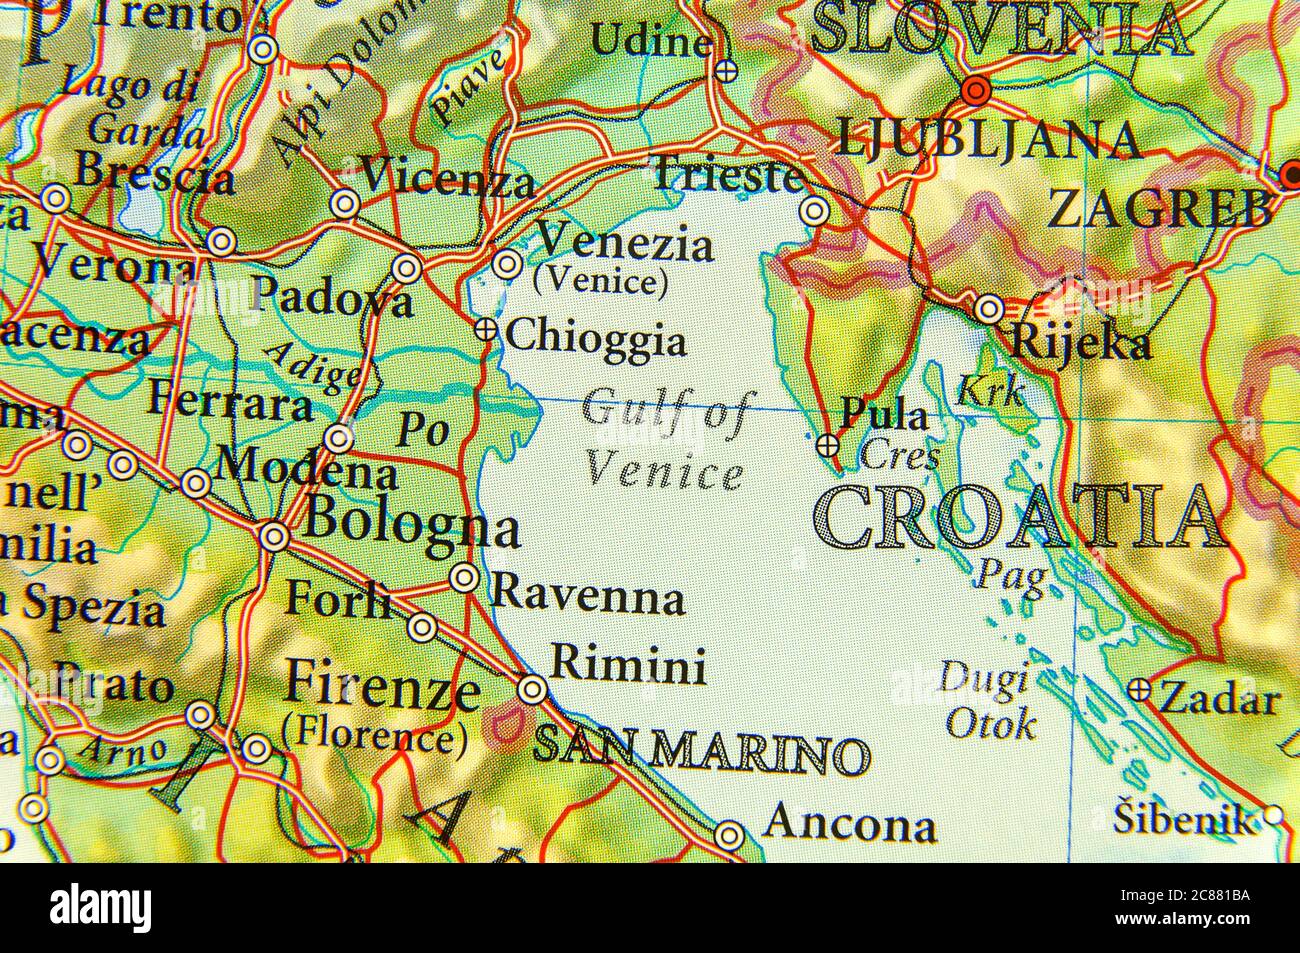 Carte géographique du golfe de Venise de la mer Adriatique européenne Banque D'Images